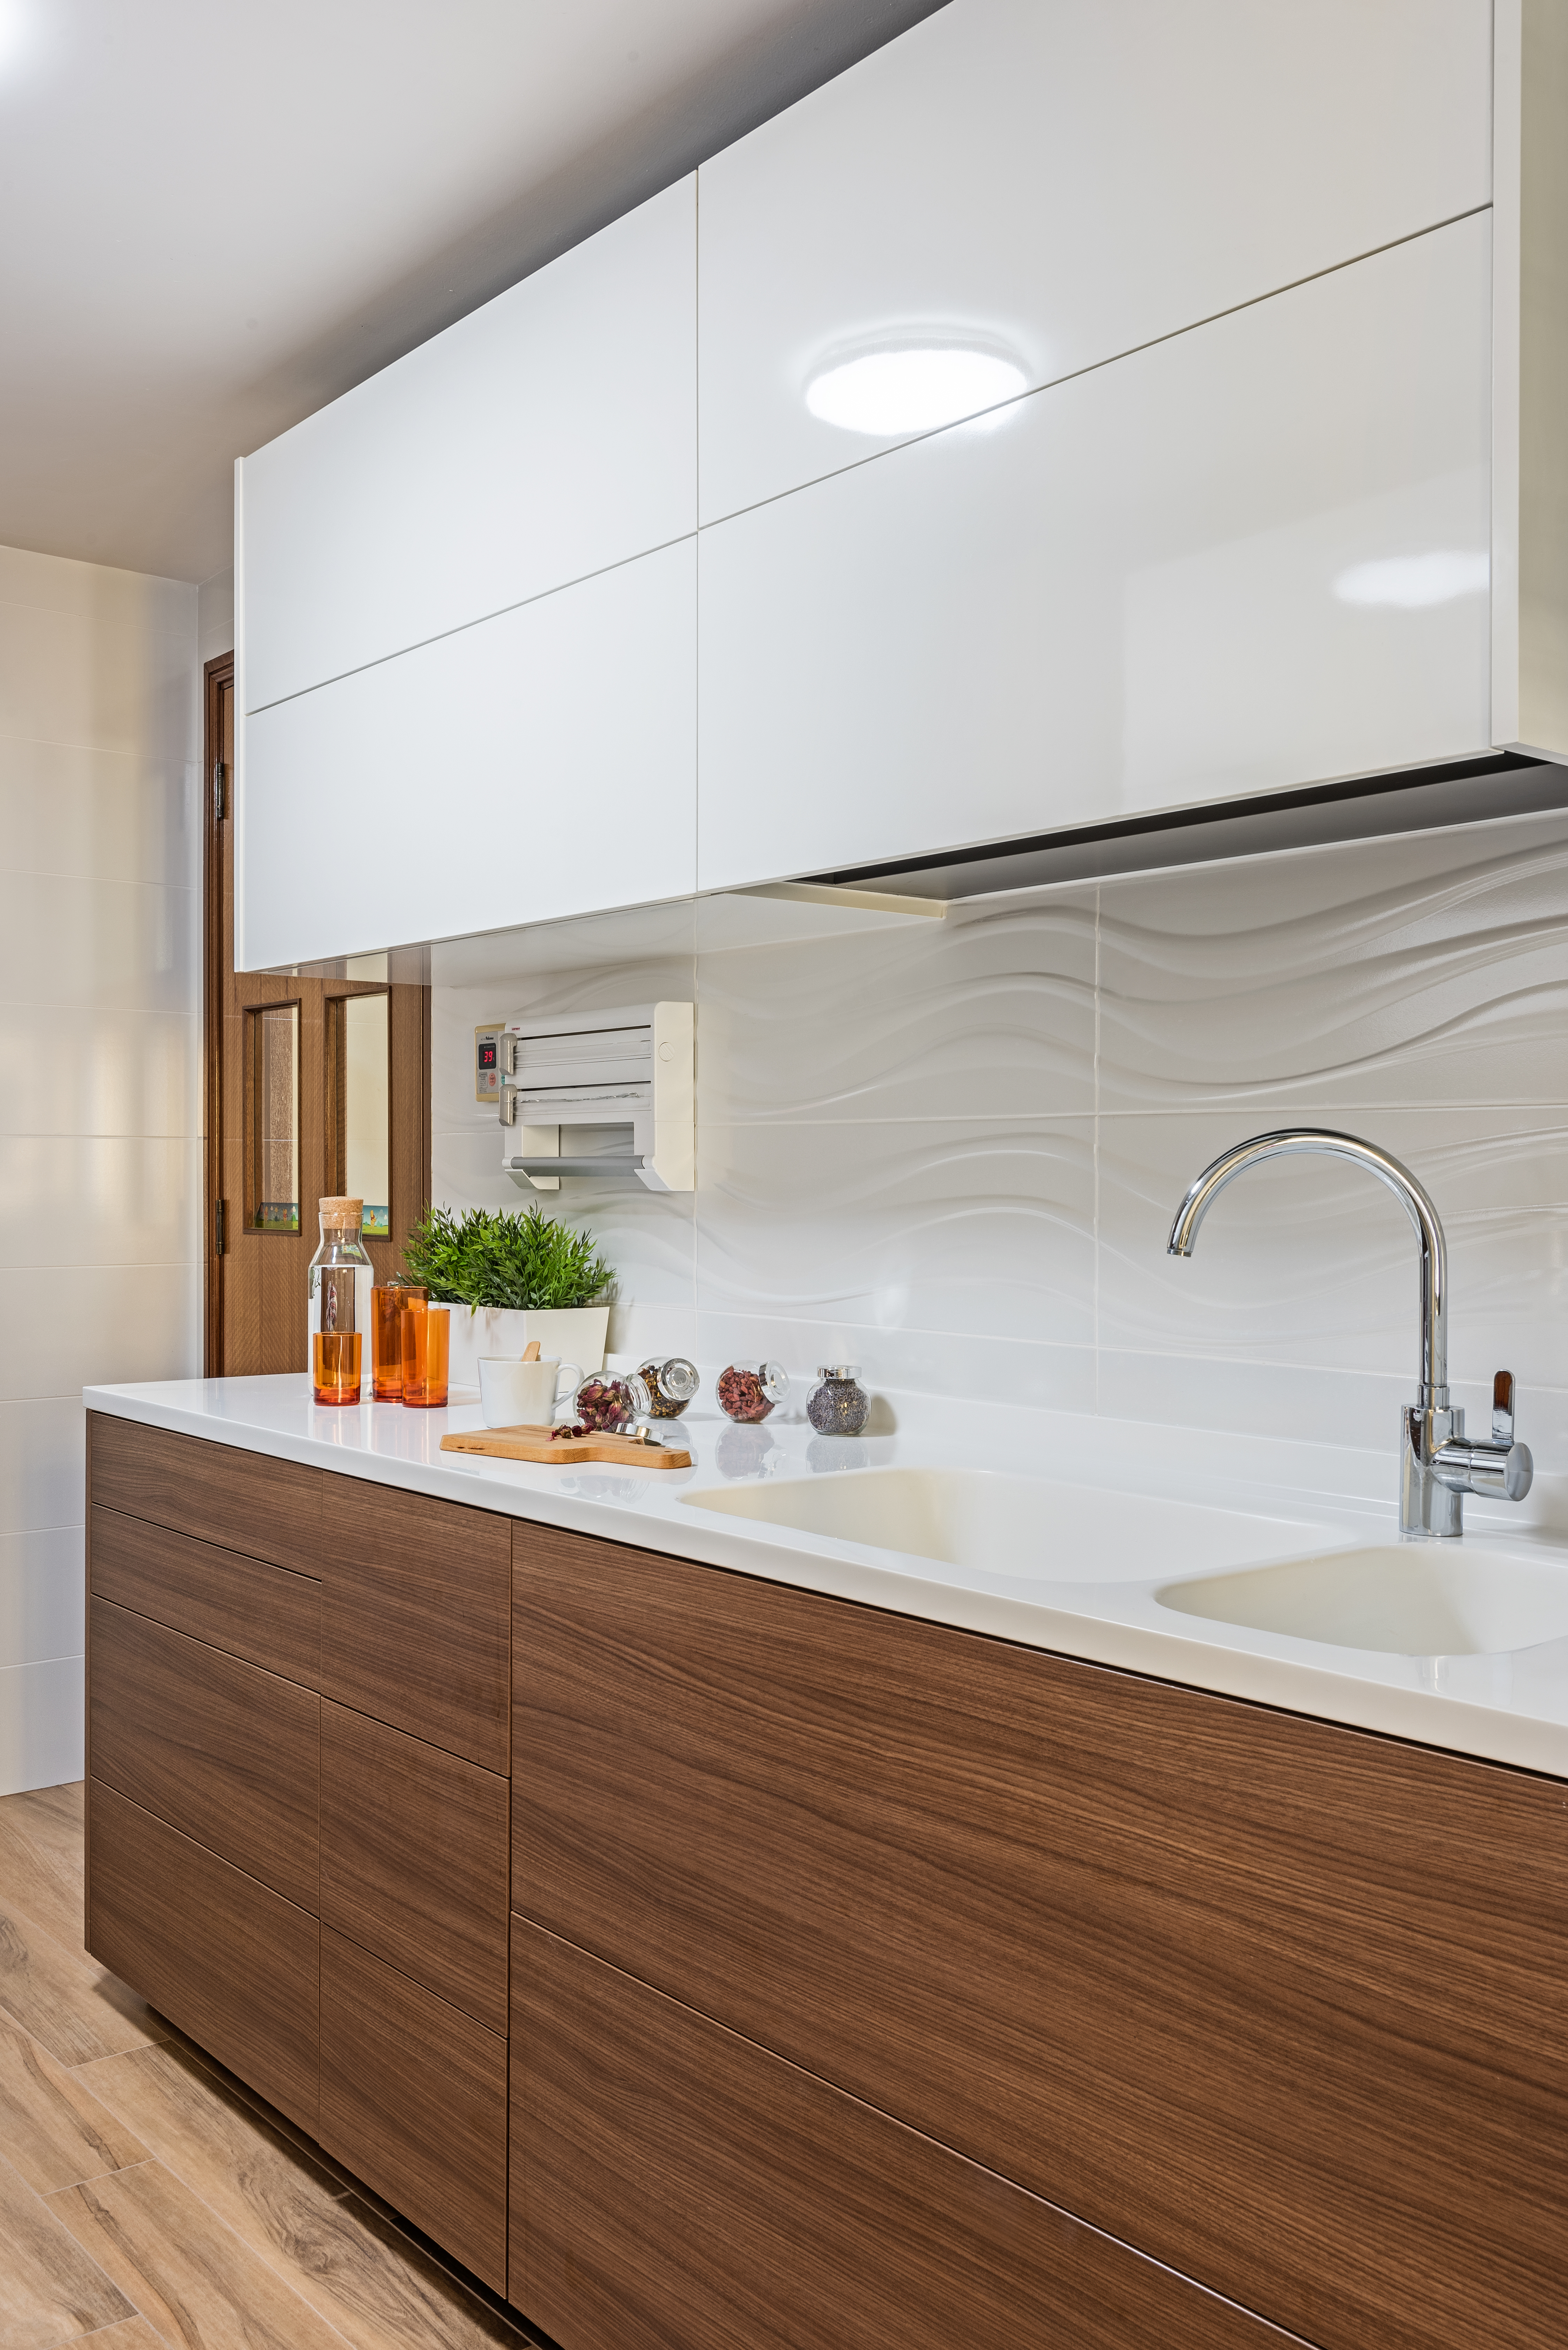 Industrial, Modern, Resort Design - Kitchen - HDB 5 Room - Design by Luxurious Design Pte Ltd